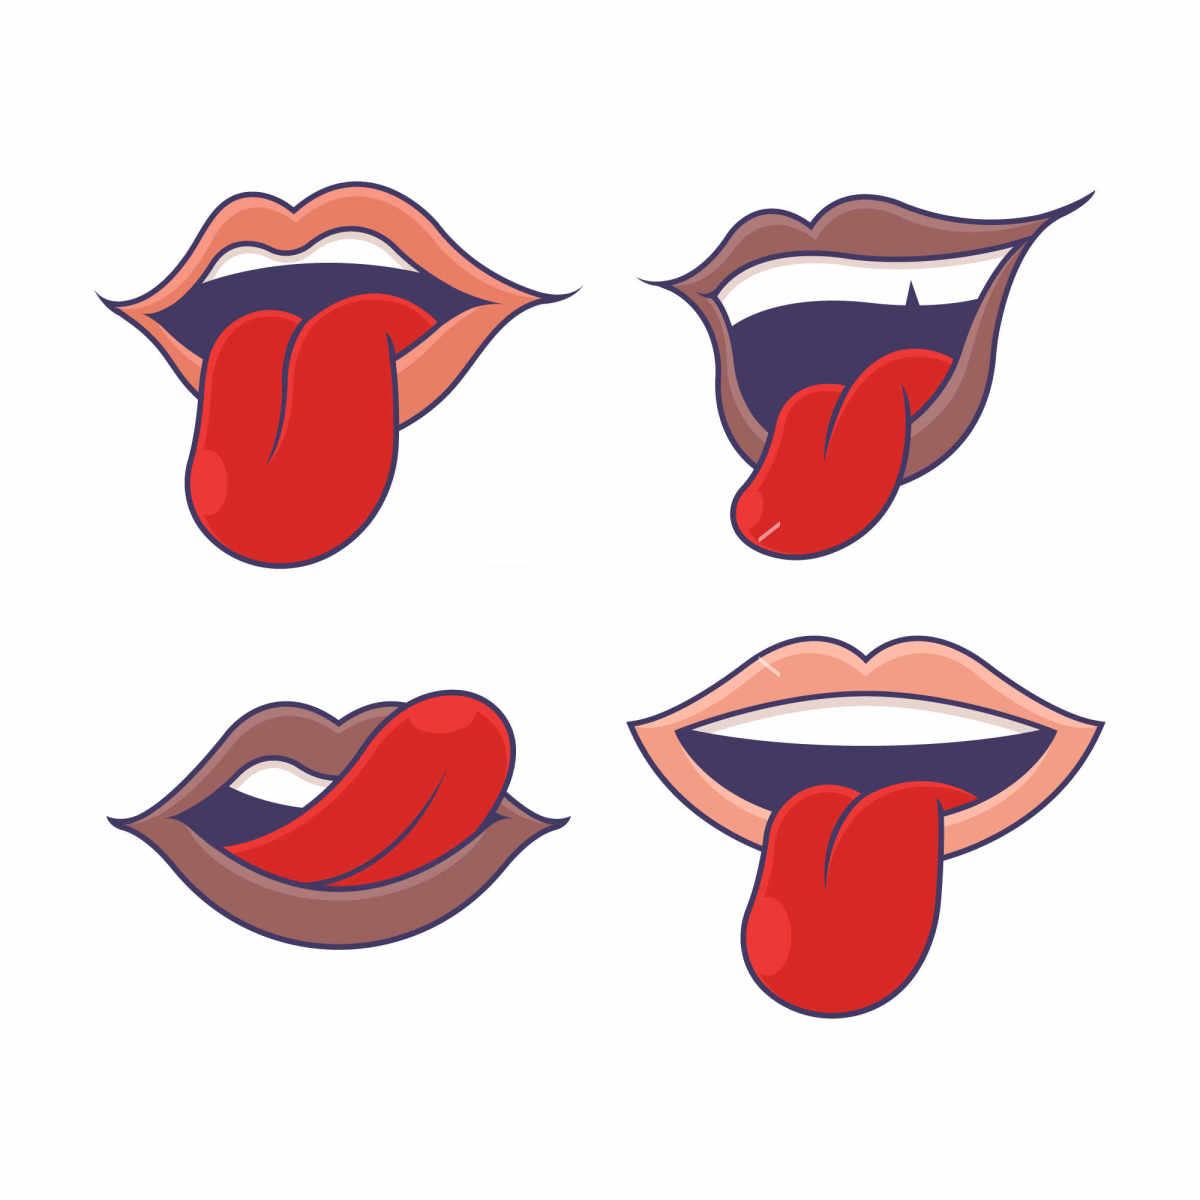 嘴巴与舌头的表情包插画